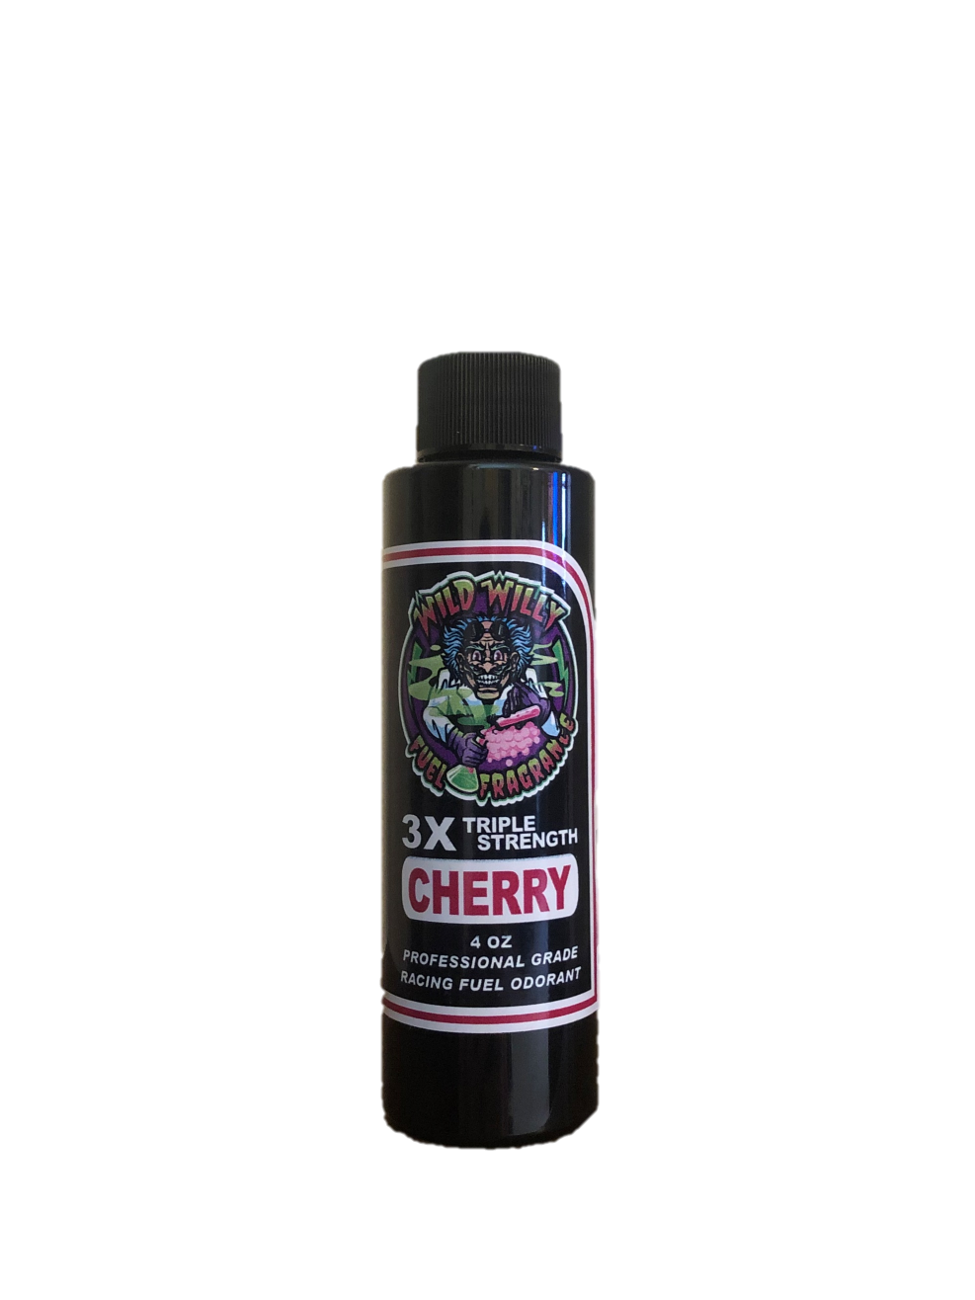 Cherry - Wild Willy Fuel Fragrance - 3X Triple Strength!